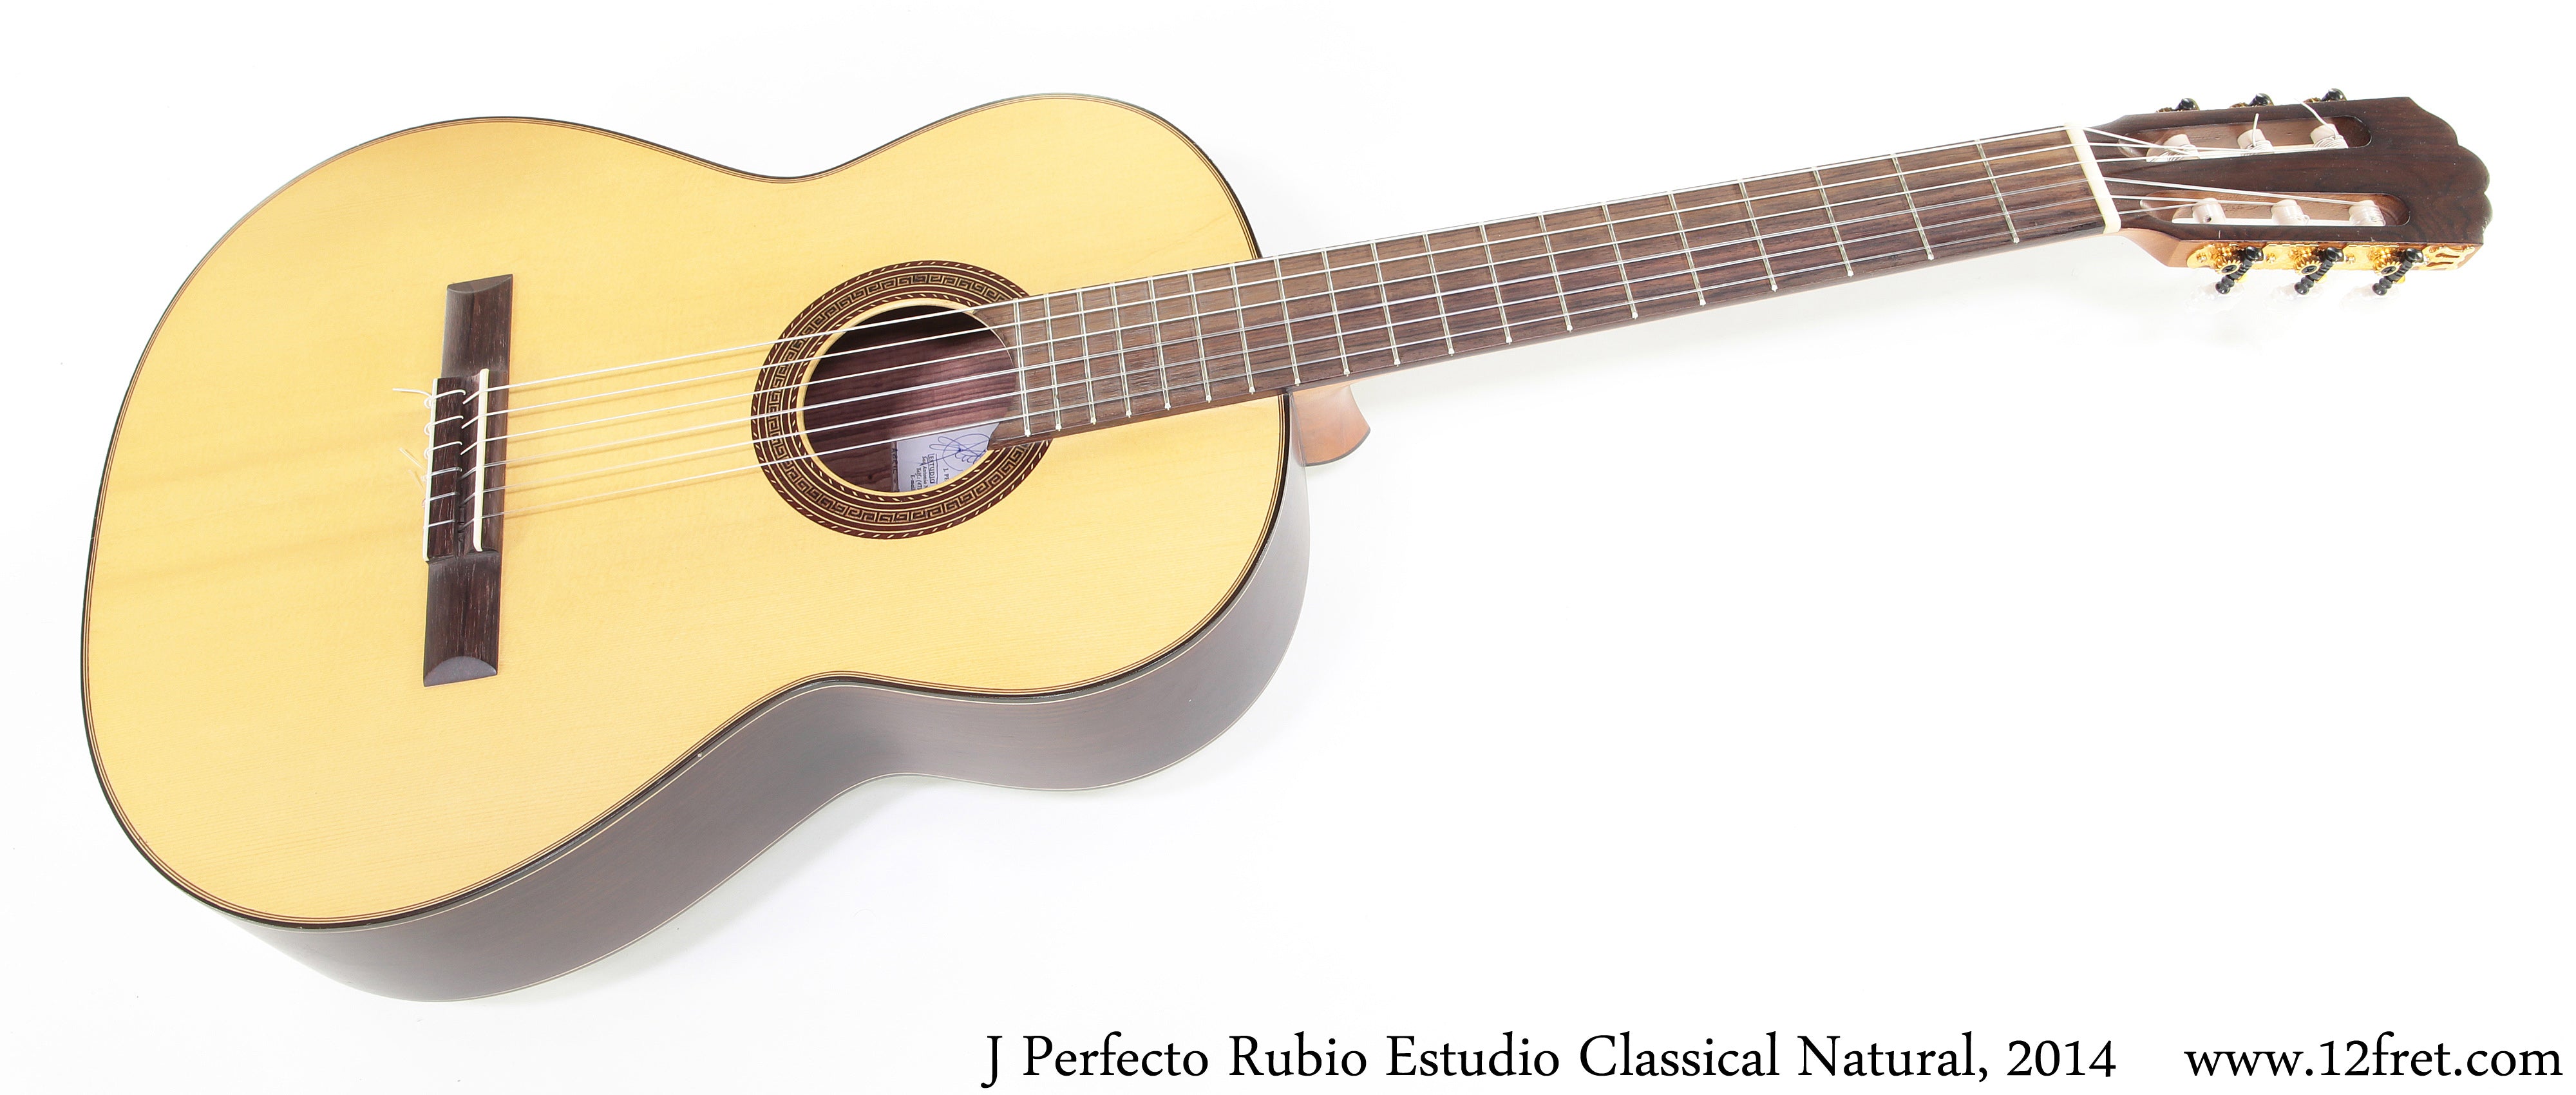 J Perfecto Rubio Estudio Classical Natural, 2014 - The Twelfth Fret